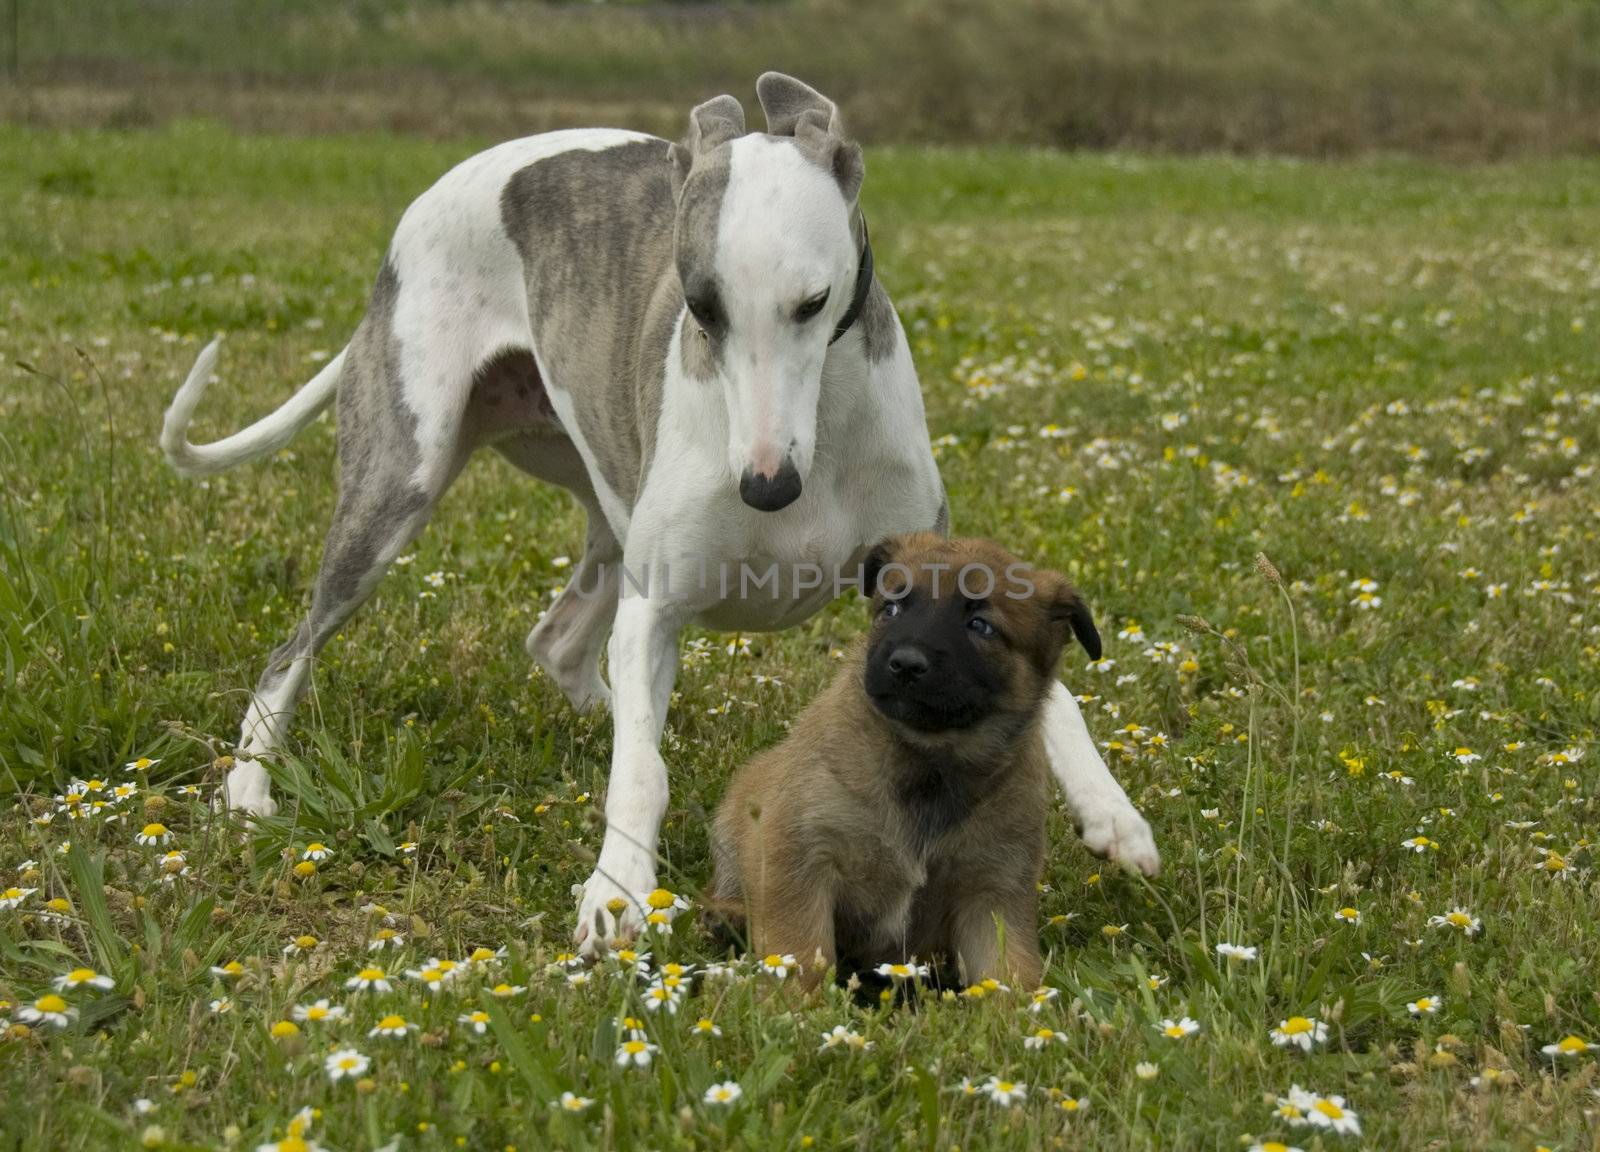 greyhound and puppy shepherd by cynoclub